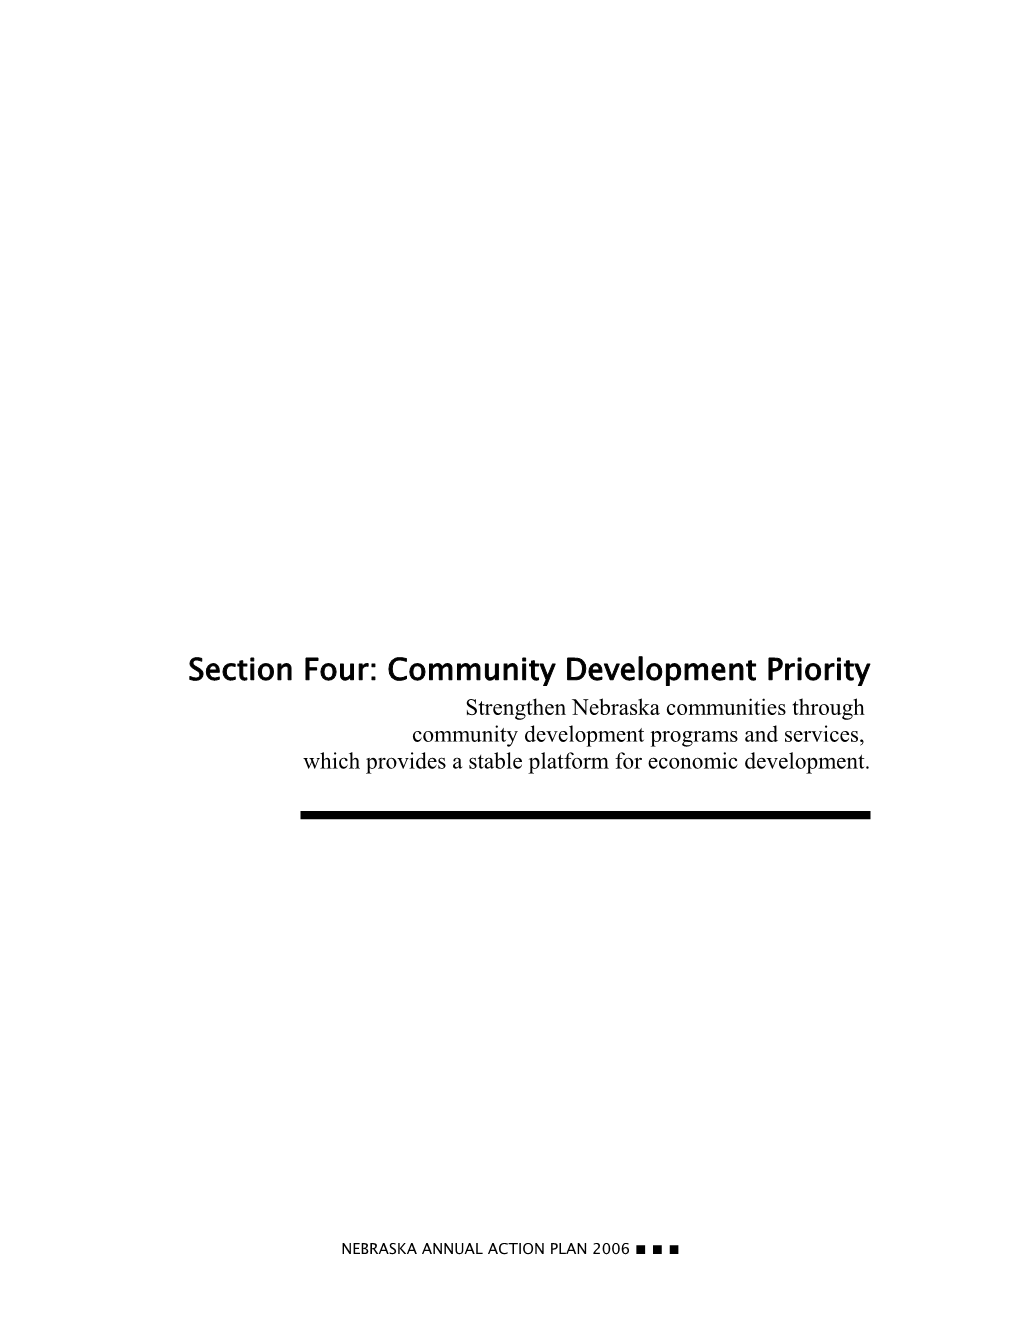 Community Development Priority